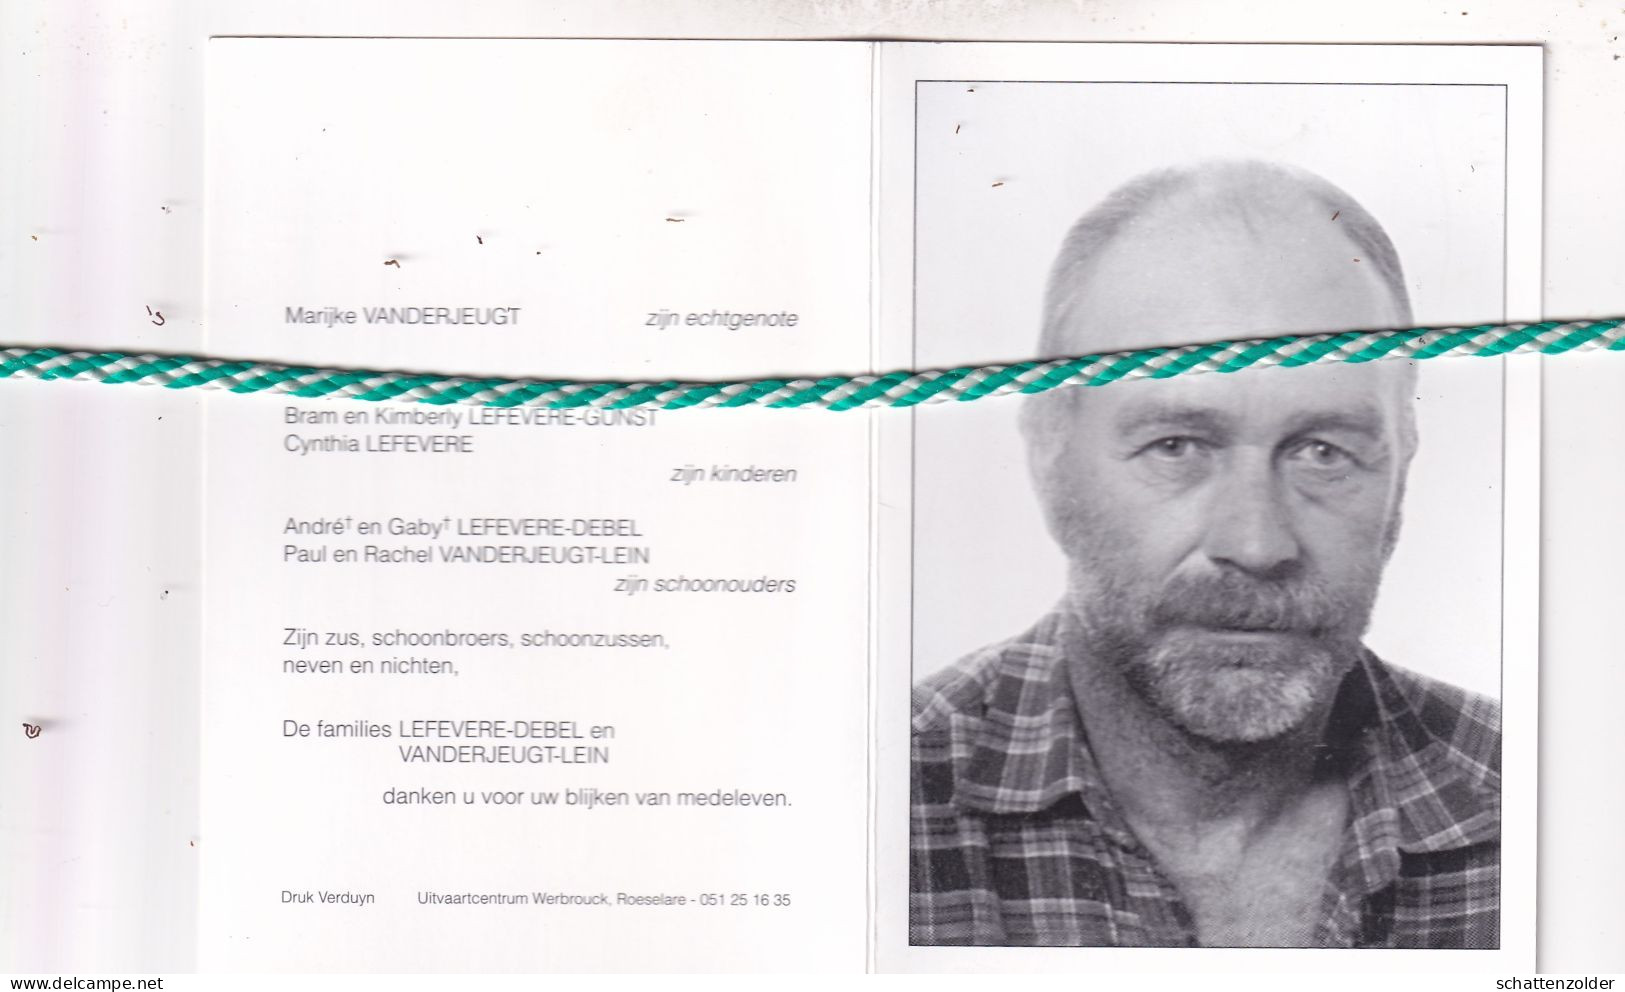 Johan Lefevere-Vanderjeugt, Roeselare 1961, Eernegem 2012. Foto - Obituary Notices